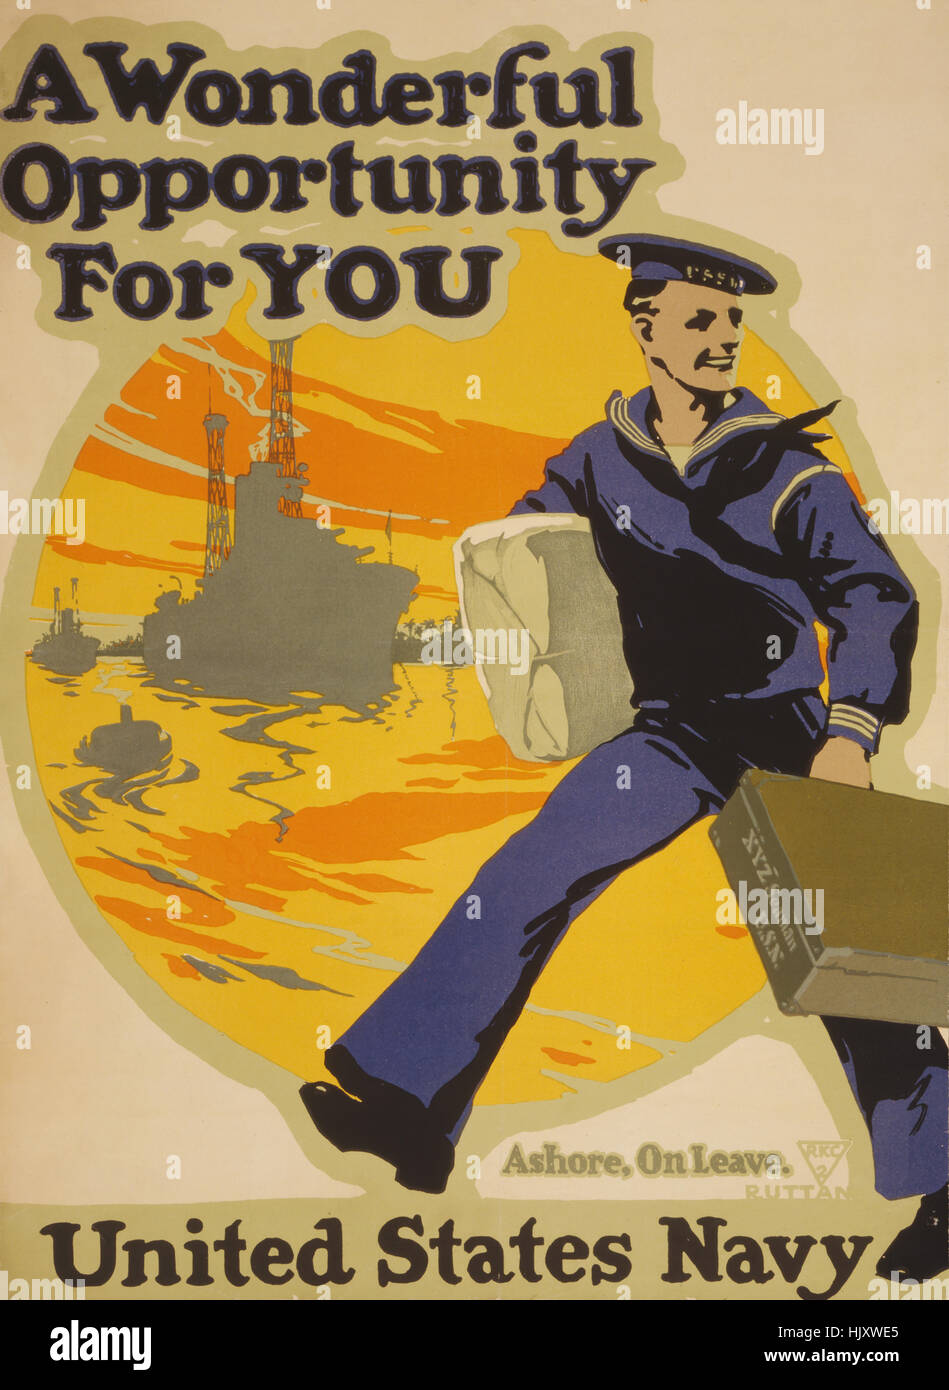 Seemann, Tragetaschen mit Schiffen im Hintergrund, "Eine wunderbare Gelegenheit für Sie, US Navy", Weltkrieg Recruitment Poster von Charles E. Ruttan, USA, 1917 Stockfoto